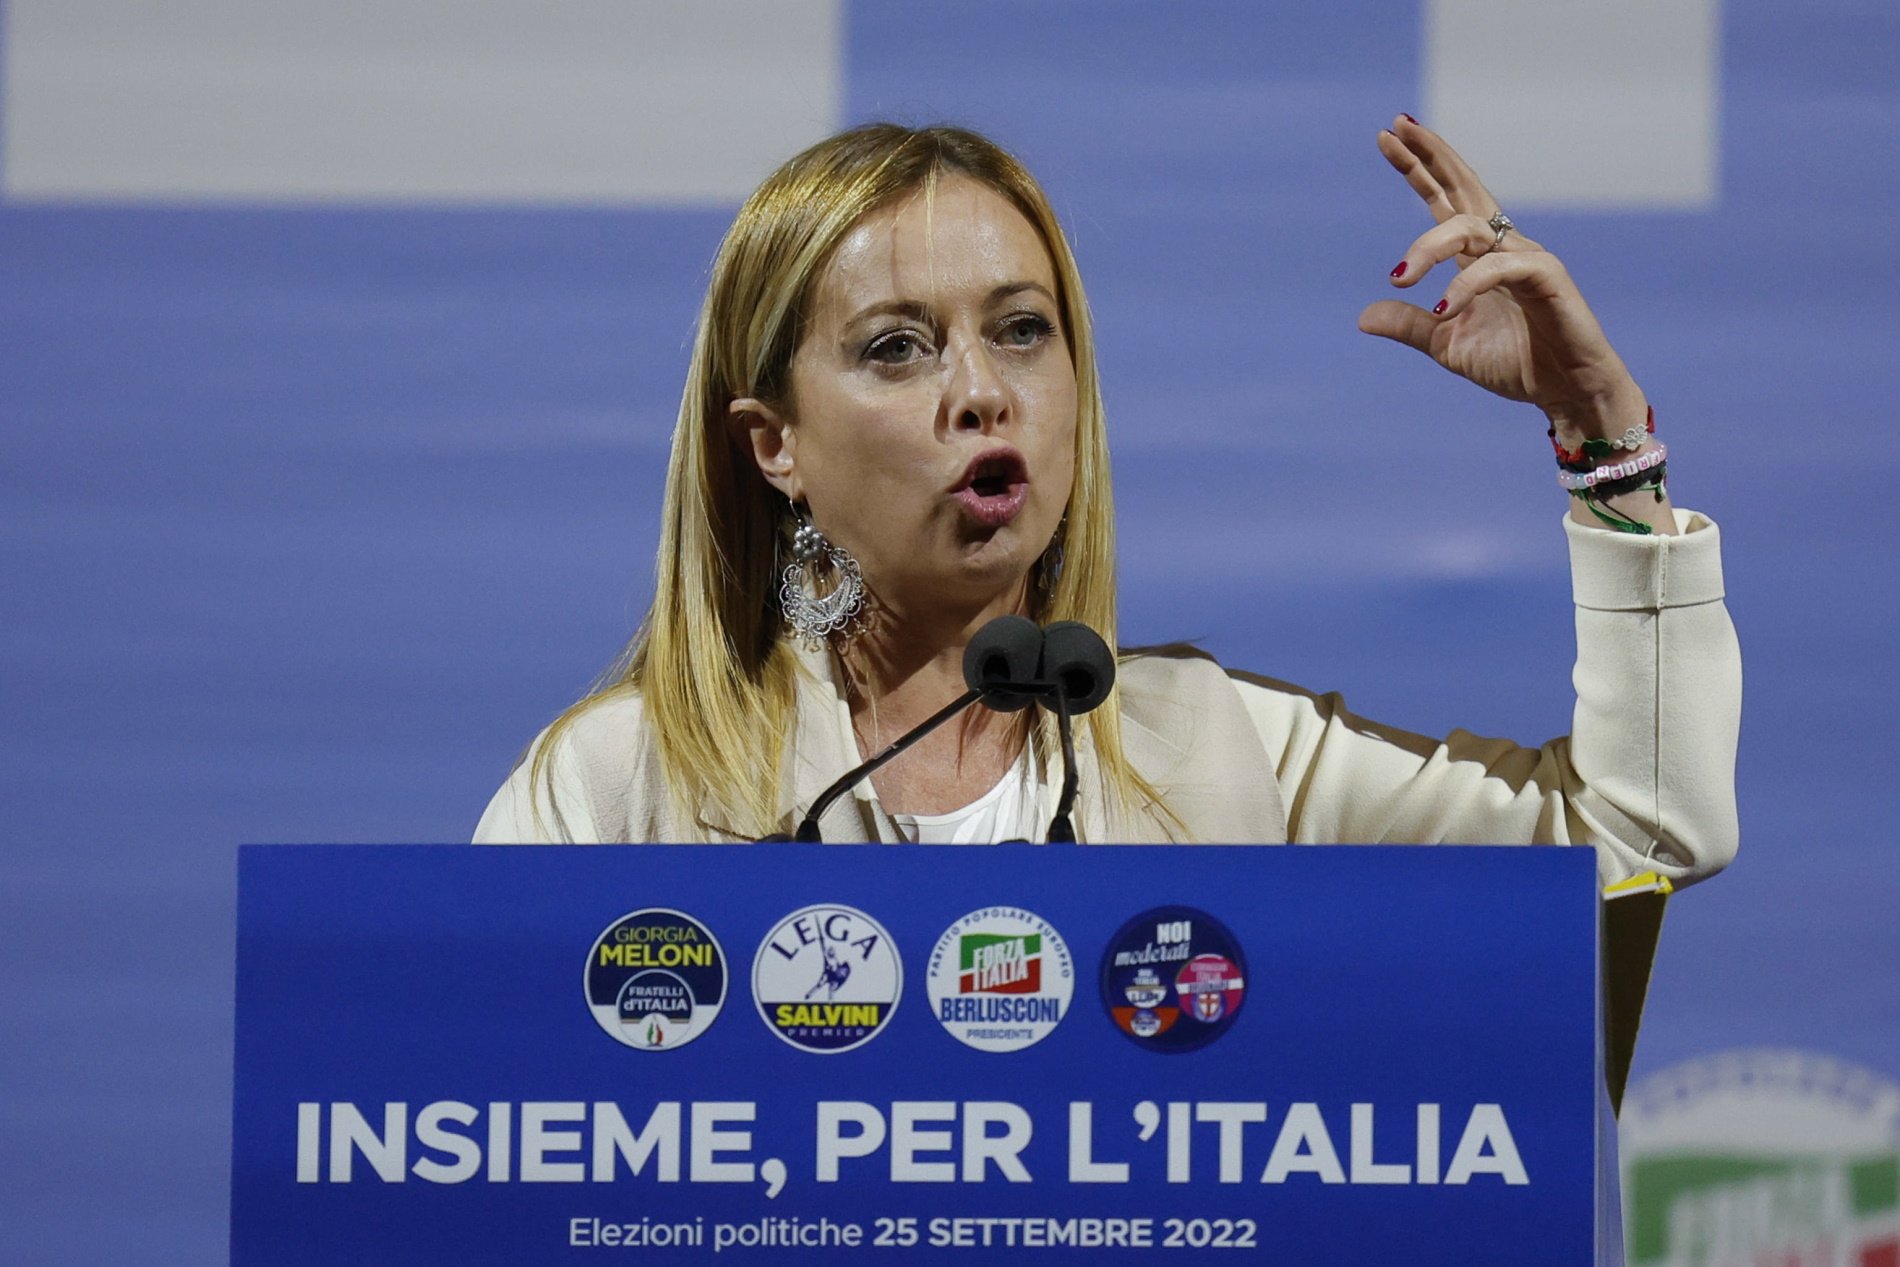 L'extrema dreta continua liderant les enquestes hores abans de les eleccions d'Itàlia 2022